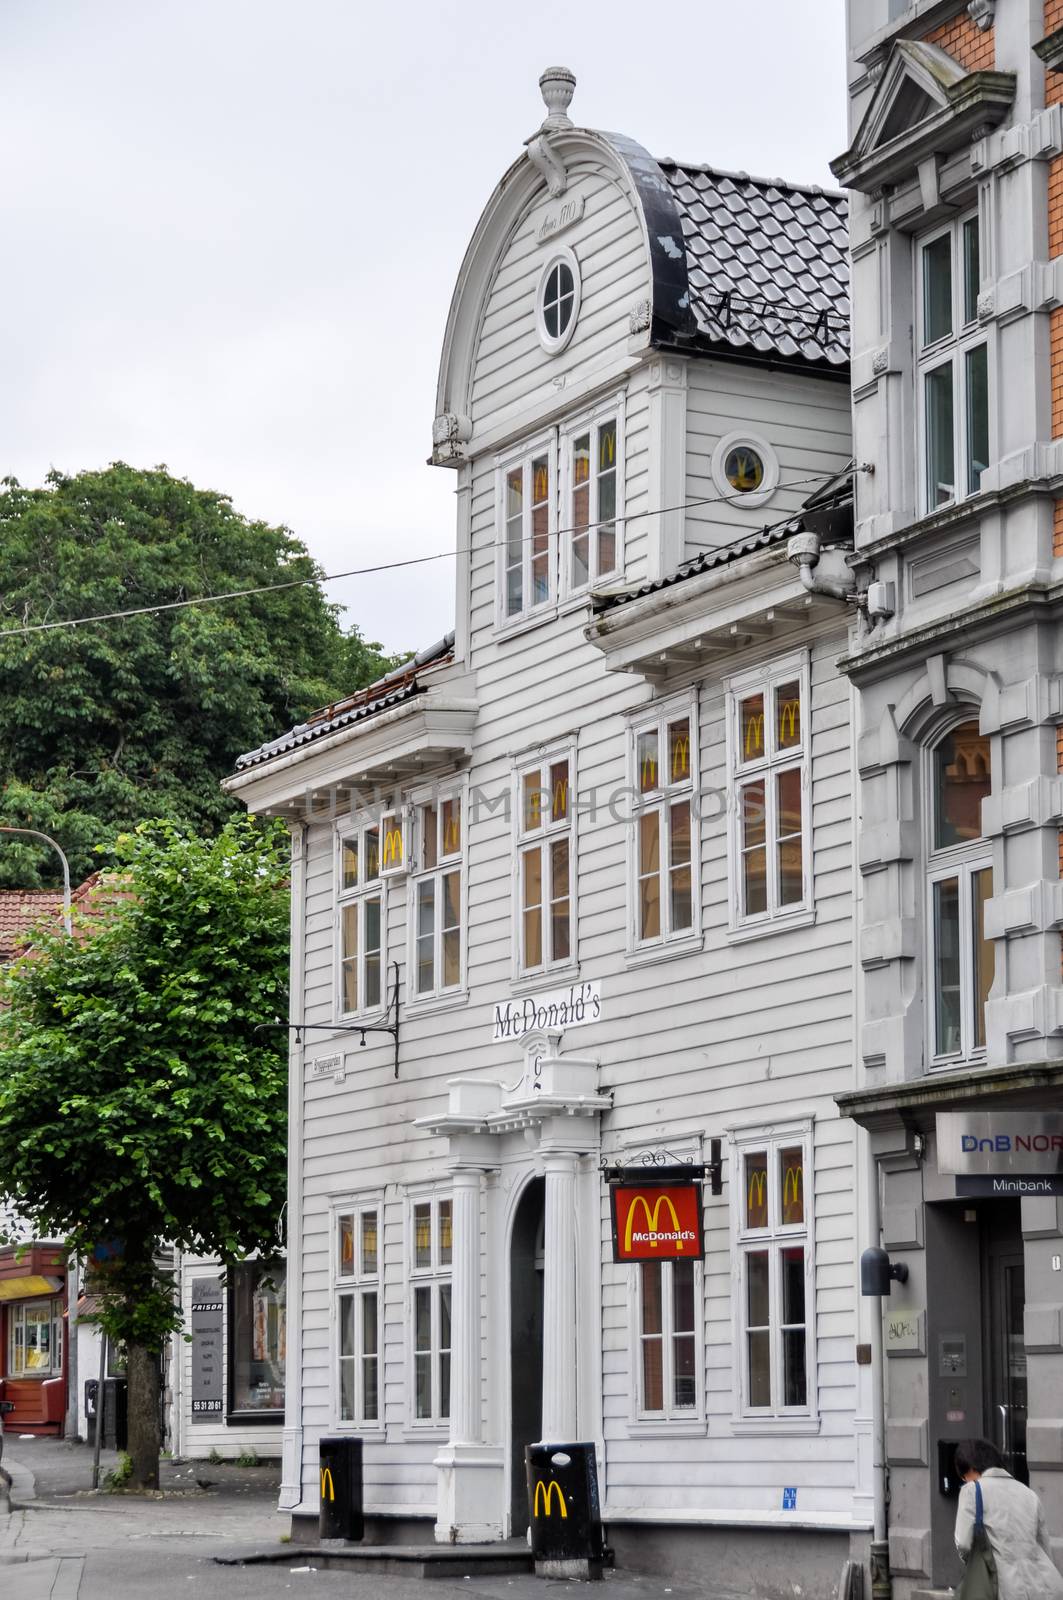 McDonald's restaurant in Bergen, Norway by dutourdumonde